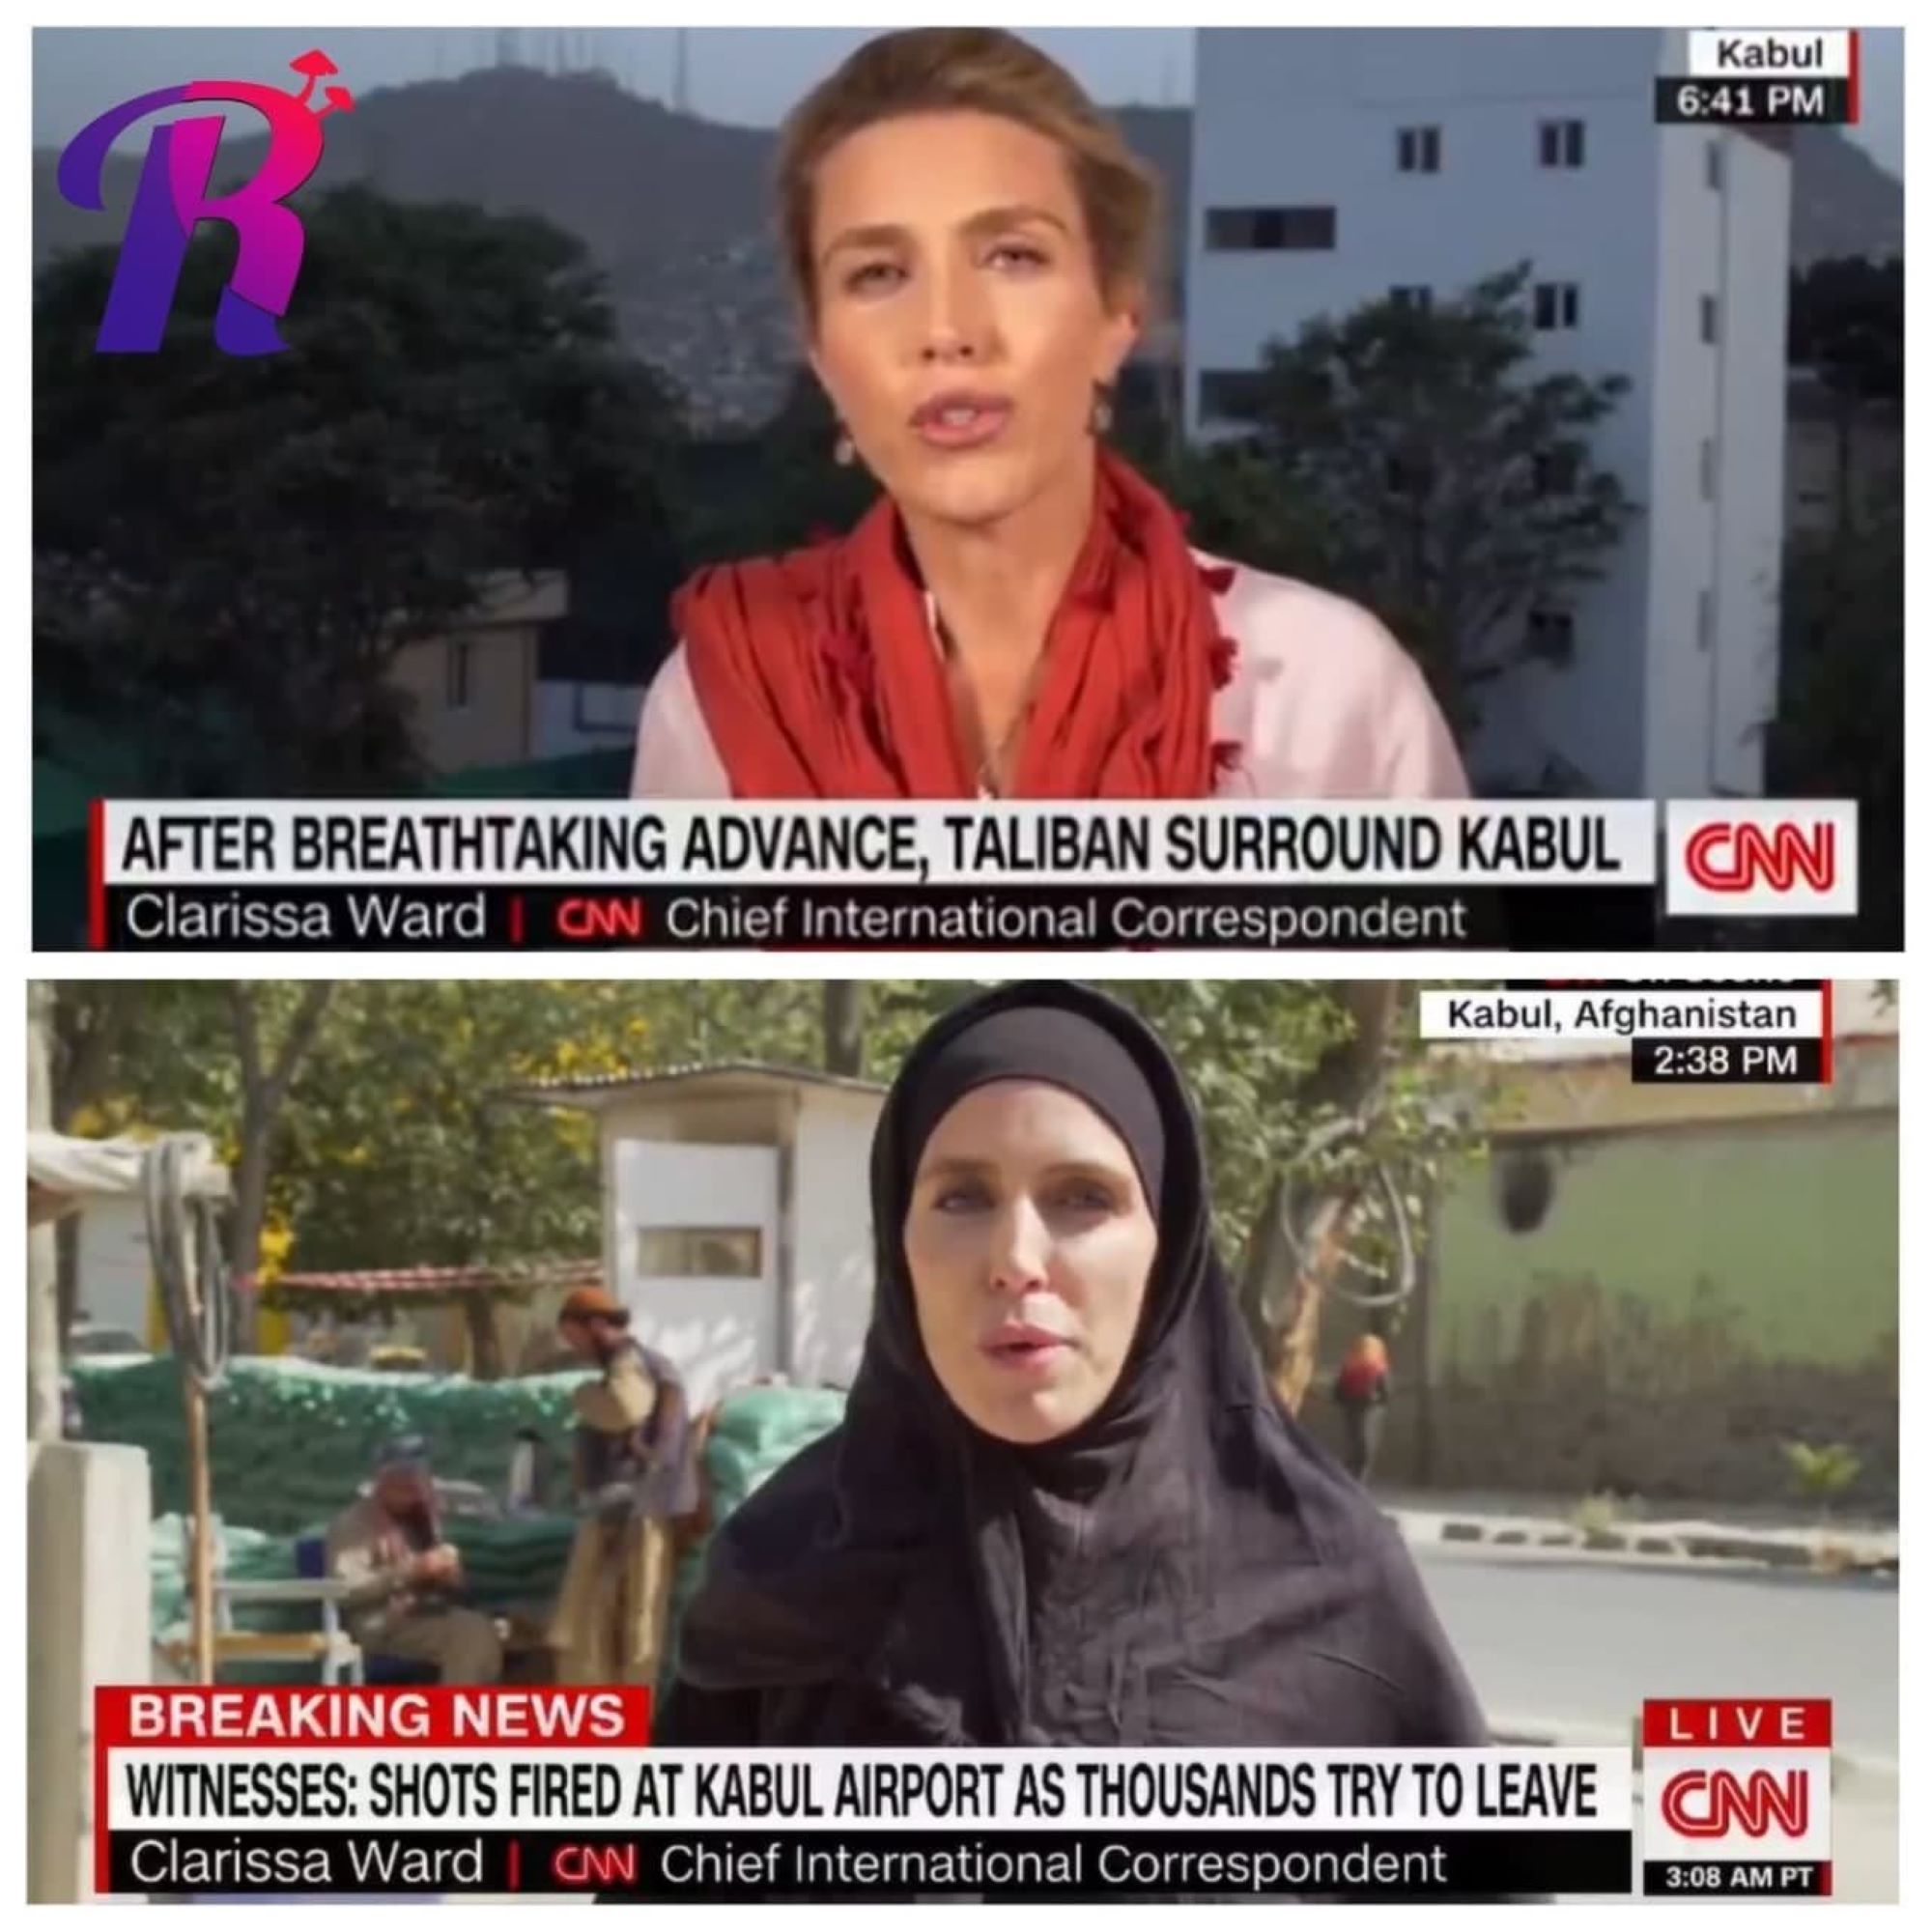 La "imprecisión" detrás de la imagen de la corresponsal de la CNN